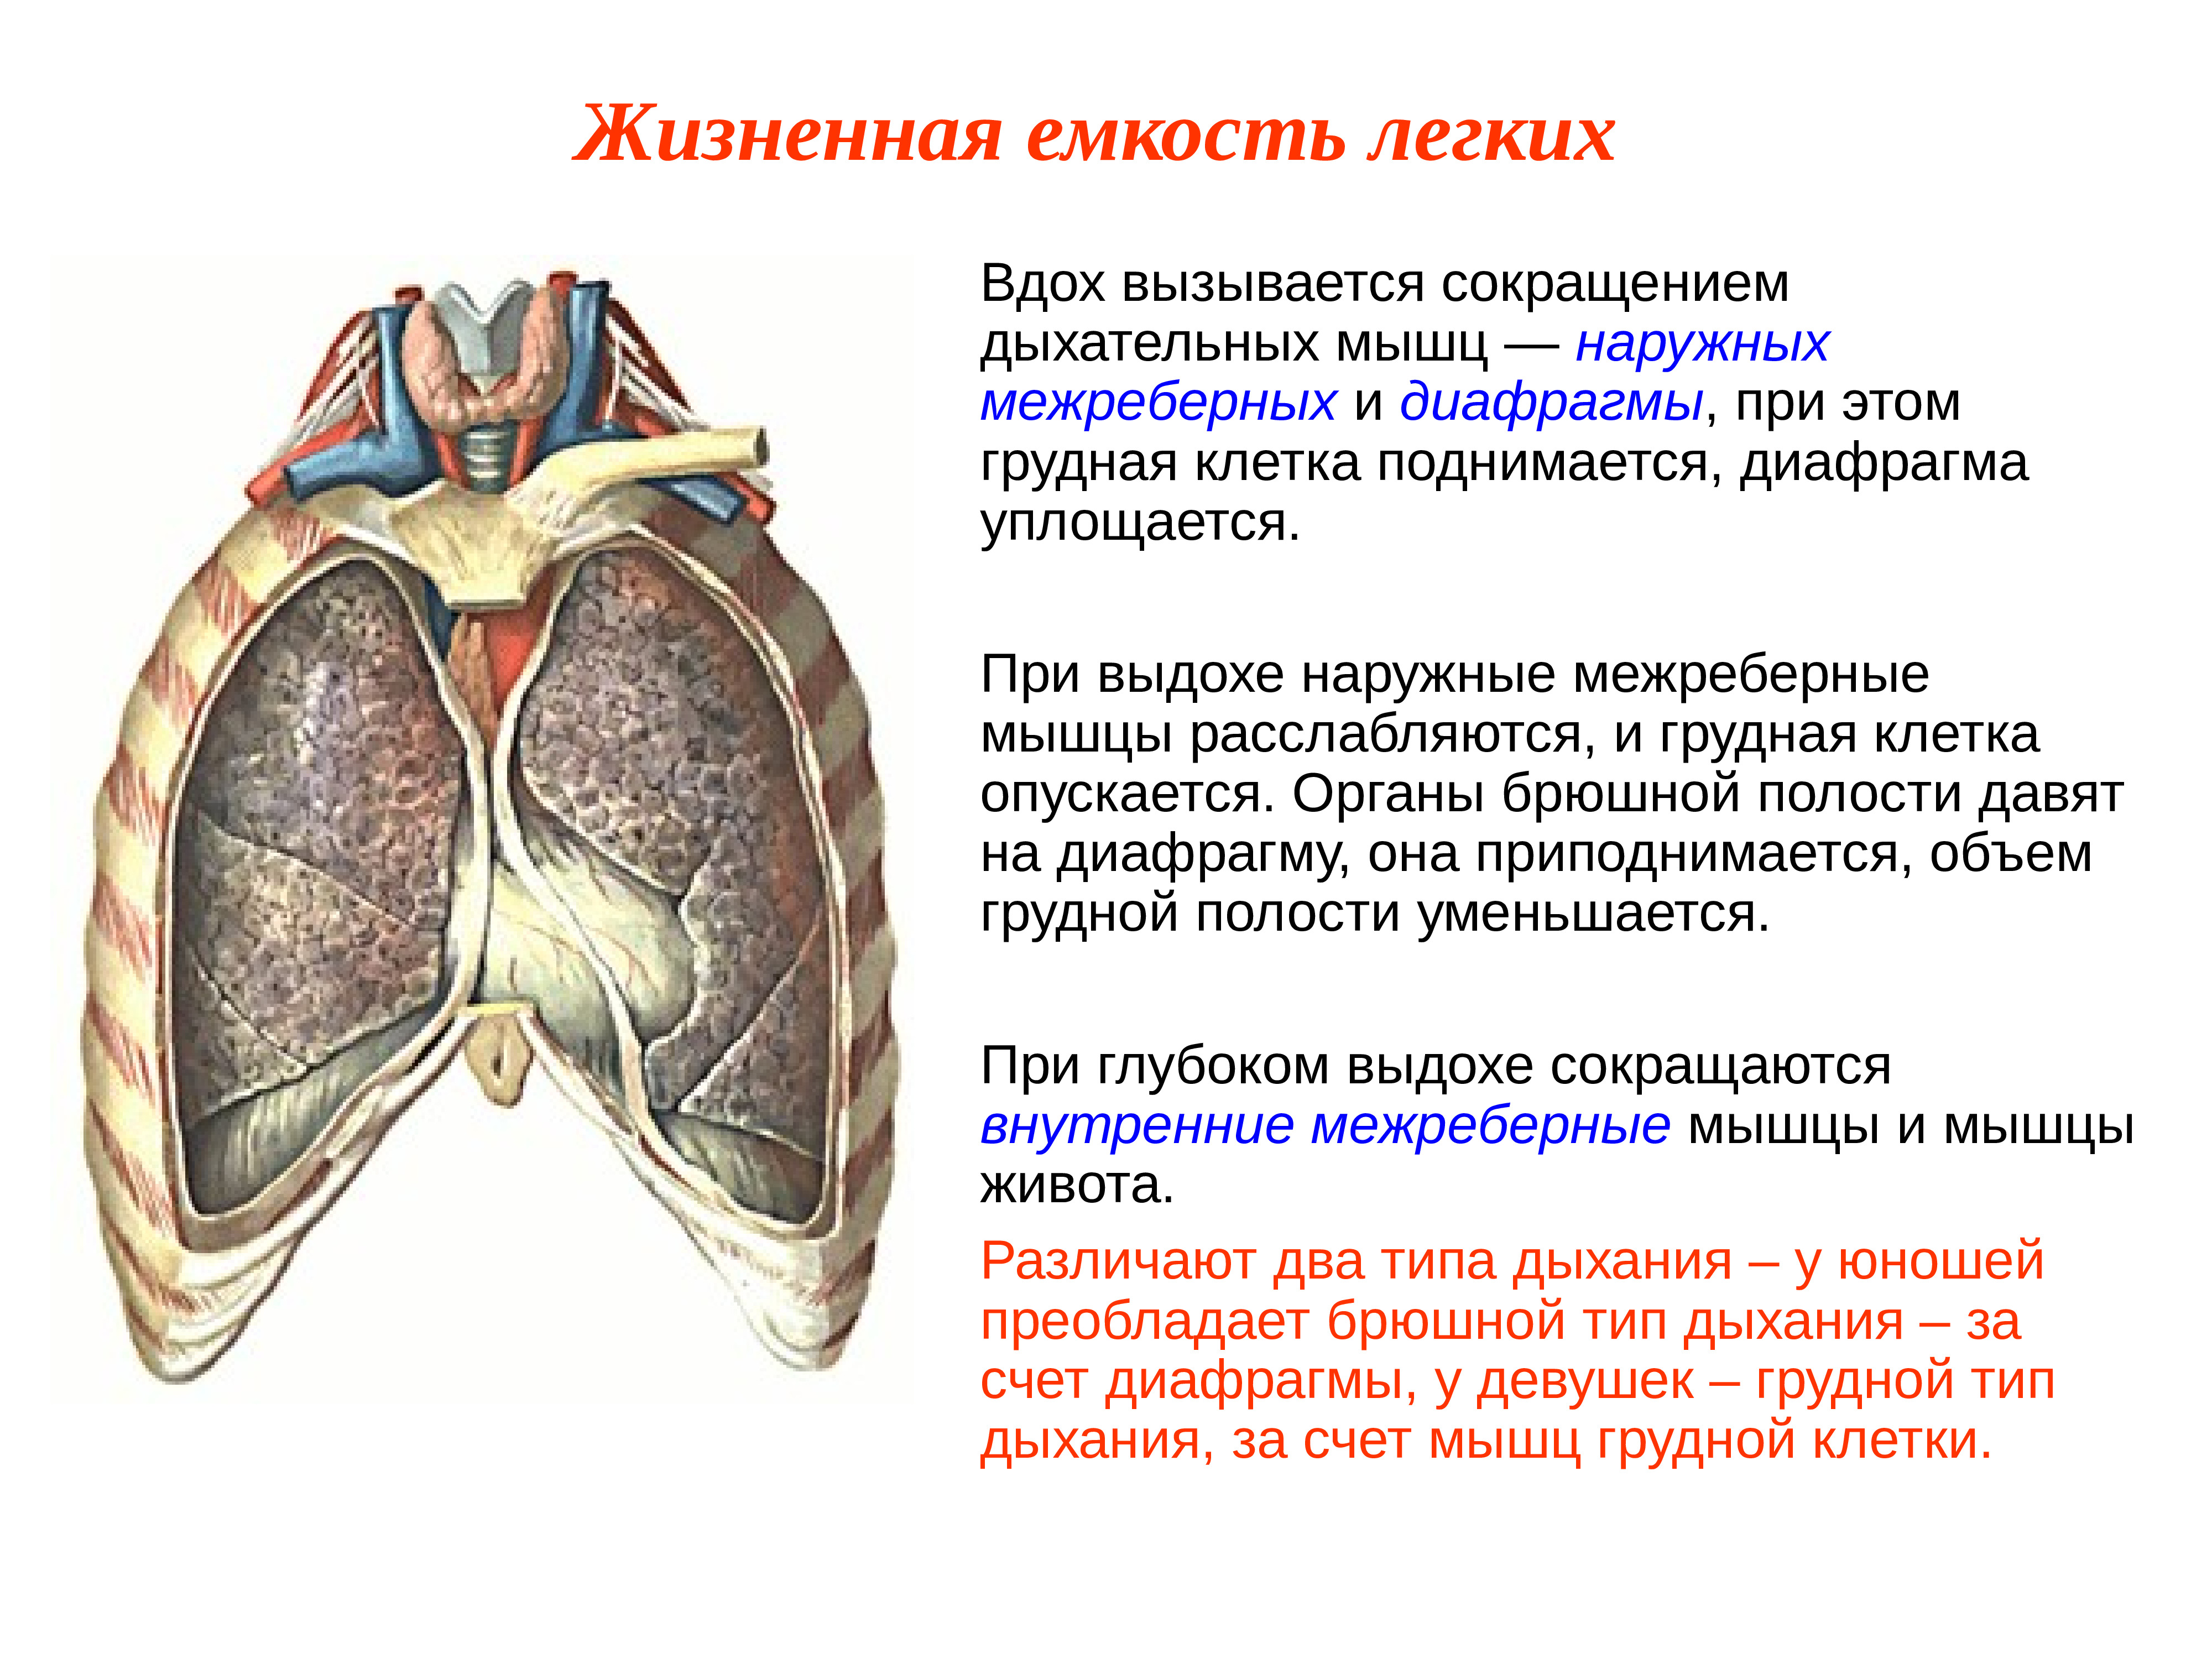 Диафрагма расслабляется диафрагма сокращается внутренние межреберные. Механизм дыхания жизненная ёмкость лёгких. Дыхательная функция грудной клетки. Легочная мышца. Мышцы легких.